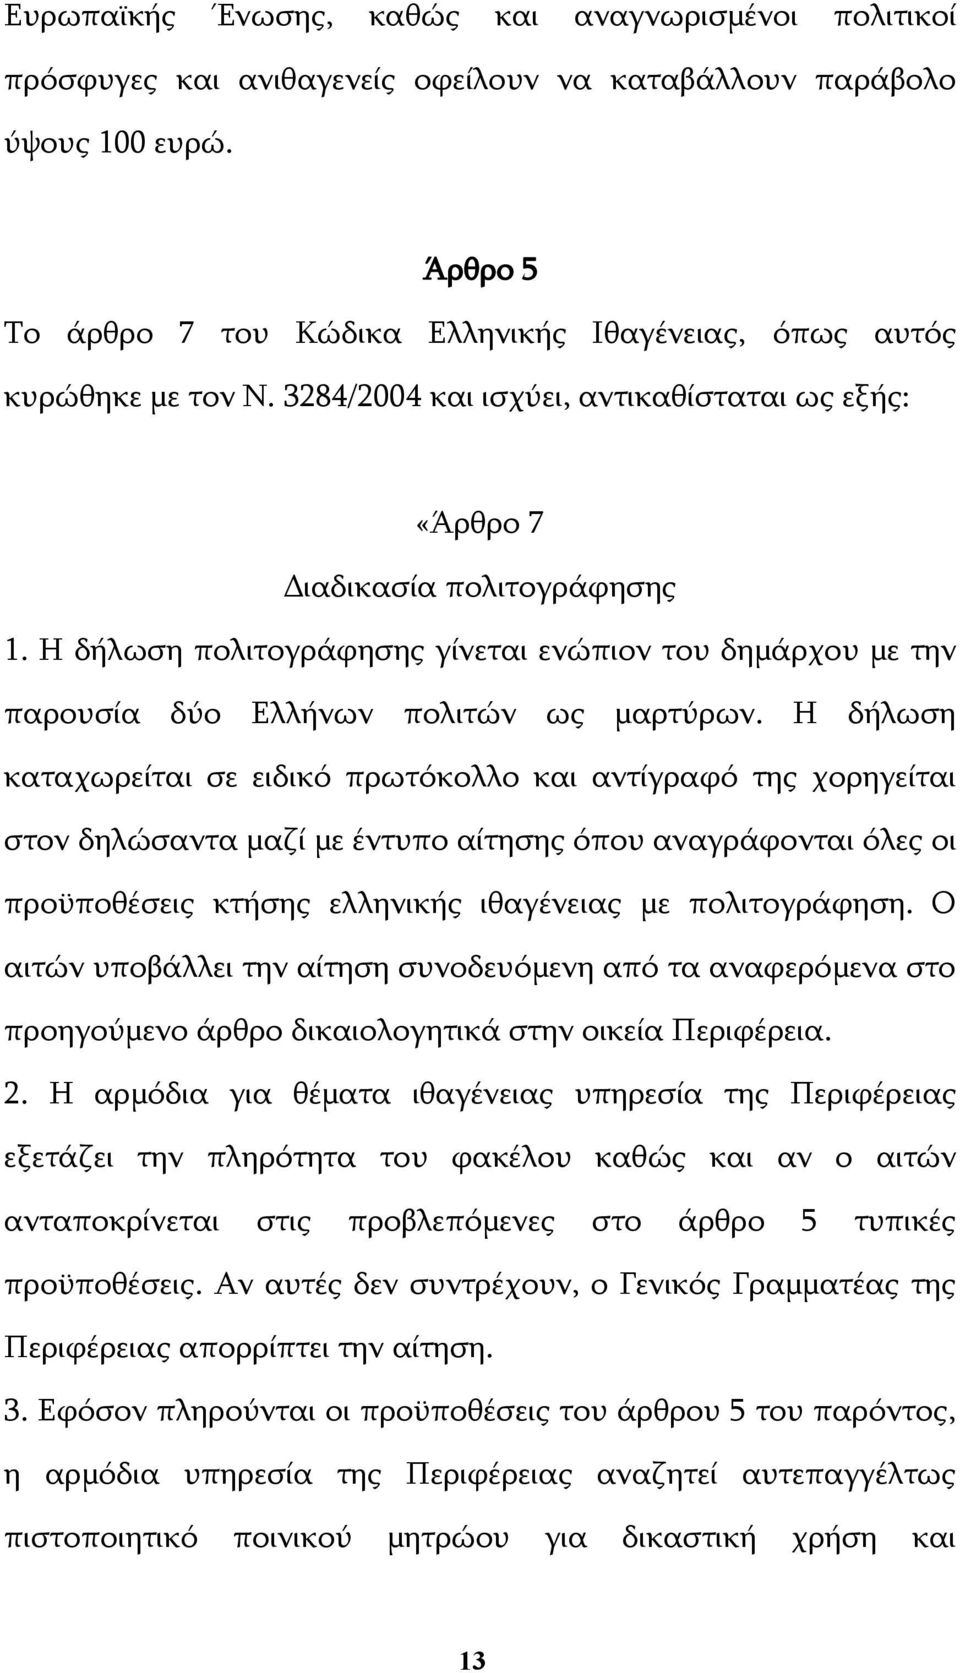 Η δήλωση πολιτογράφησης γίνεται ενώπιον του δημάρχου με την παρουσία δύο Ελλήνων πολιτών ως μαρτύρων.